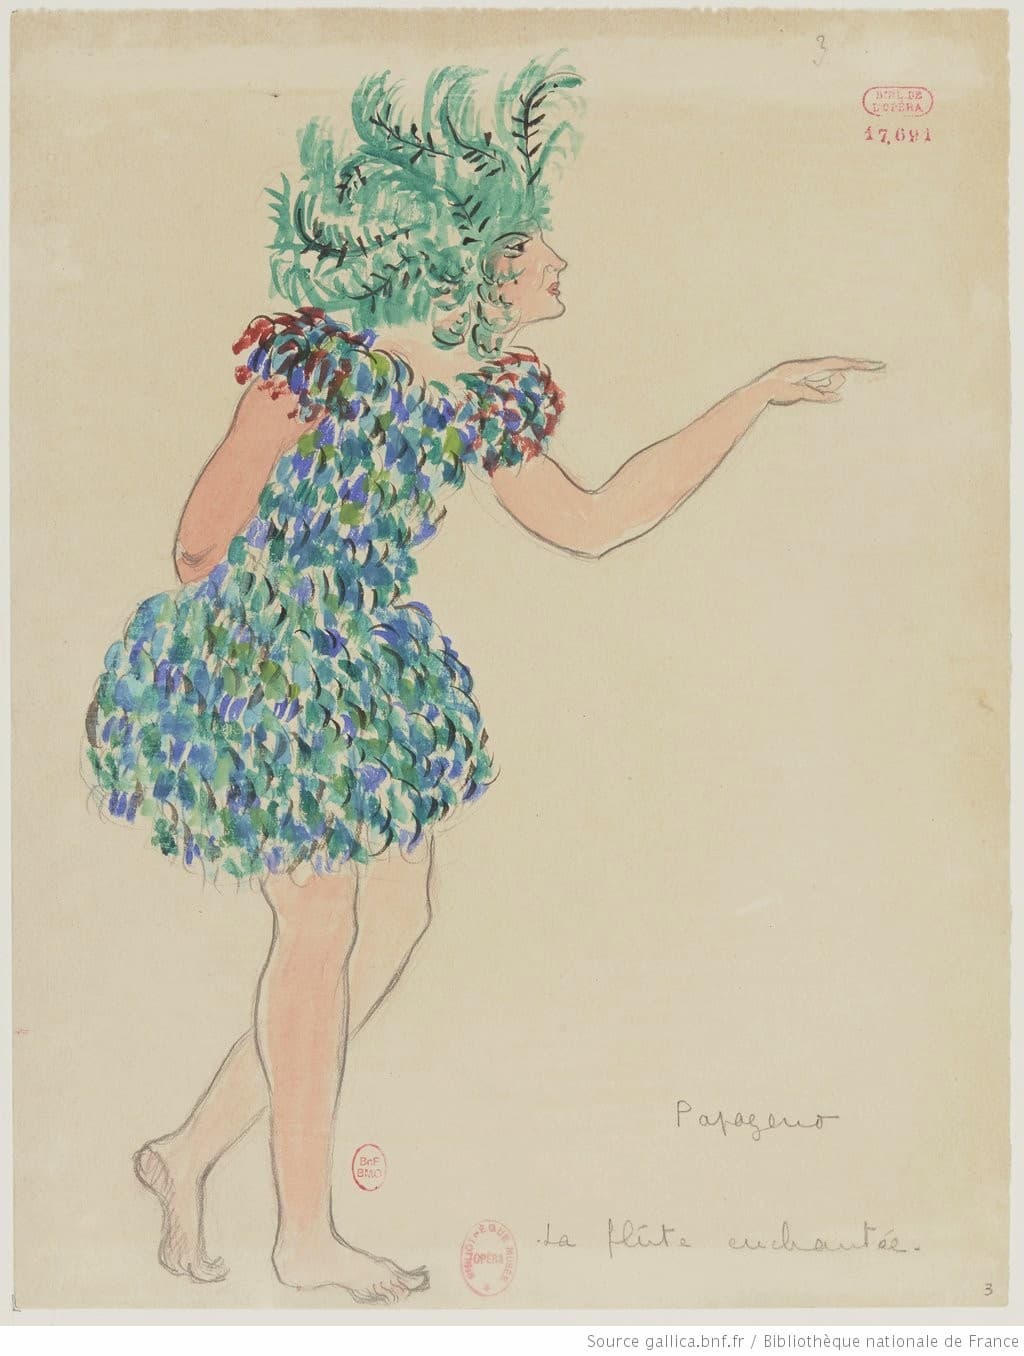 Drésa: La Flûte enchantée: Papageno, 1922 (Gallica ark:/12148/btv1b10524097w)